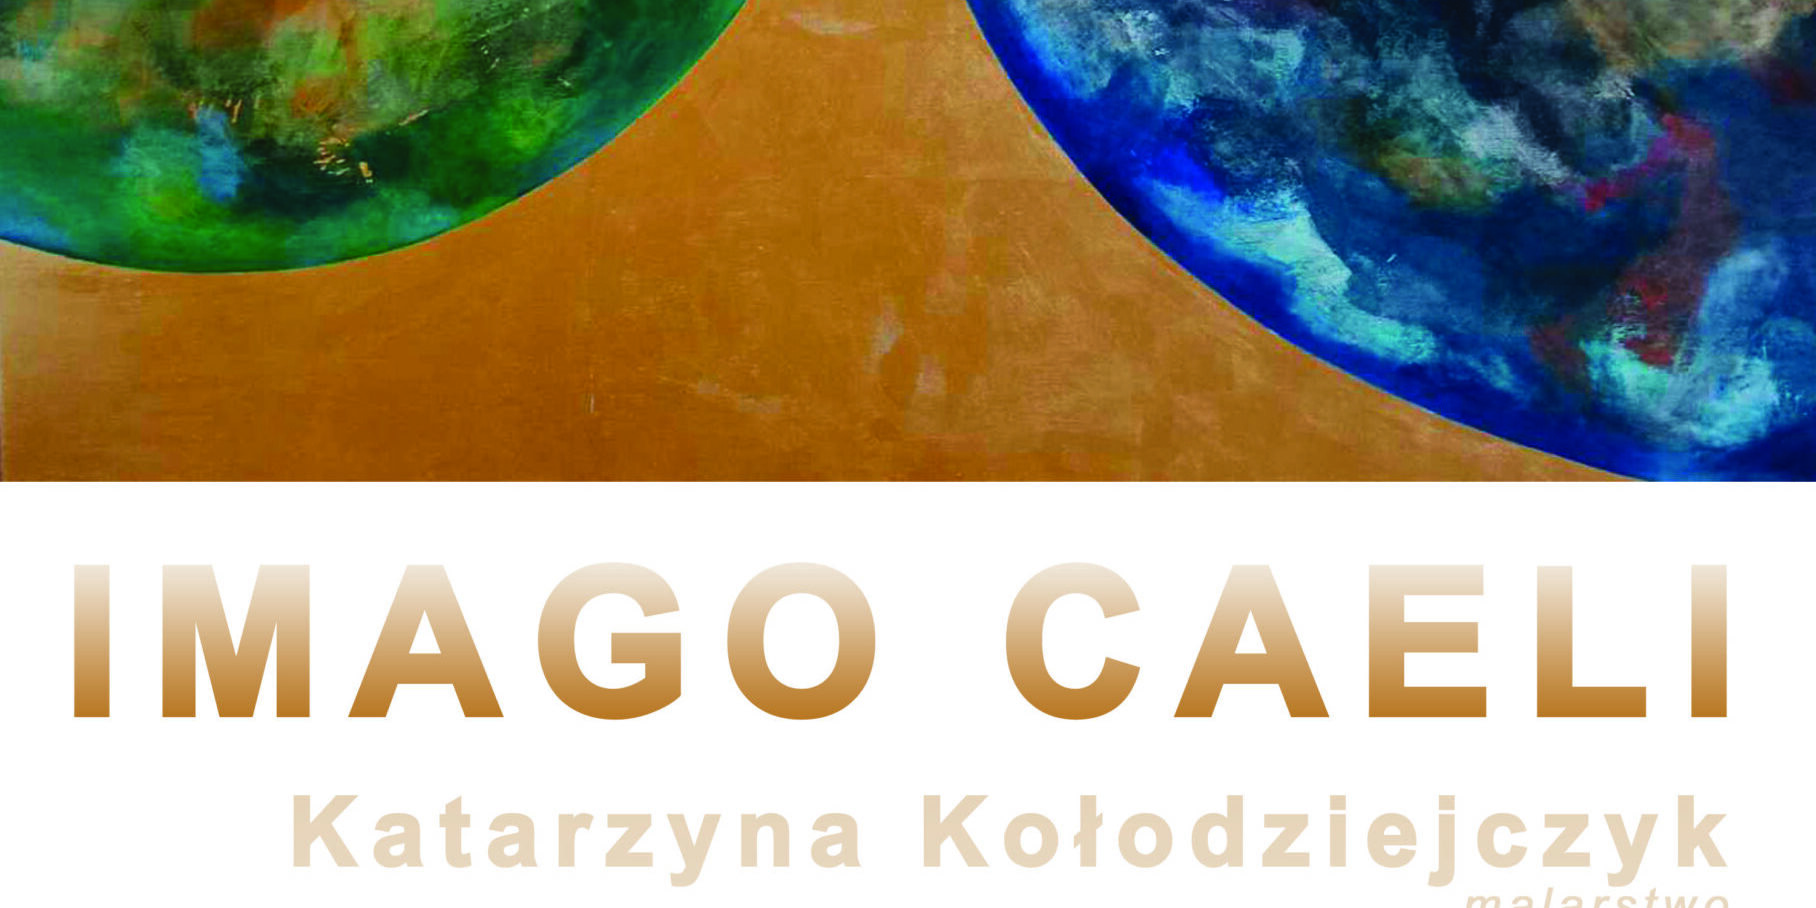 Imago Caeli – malarstwo Katarzyny Kołodziejczyk  – nowa wystawa w Muzeum Podróżników im. Tony’ego Halika